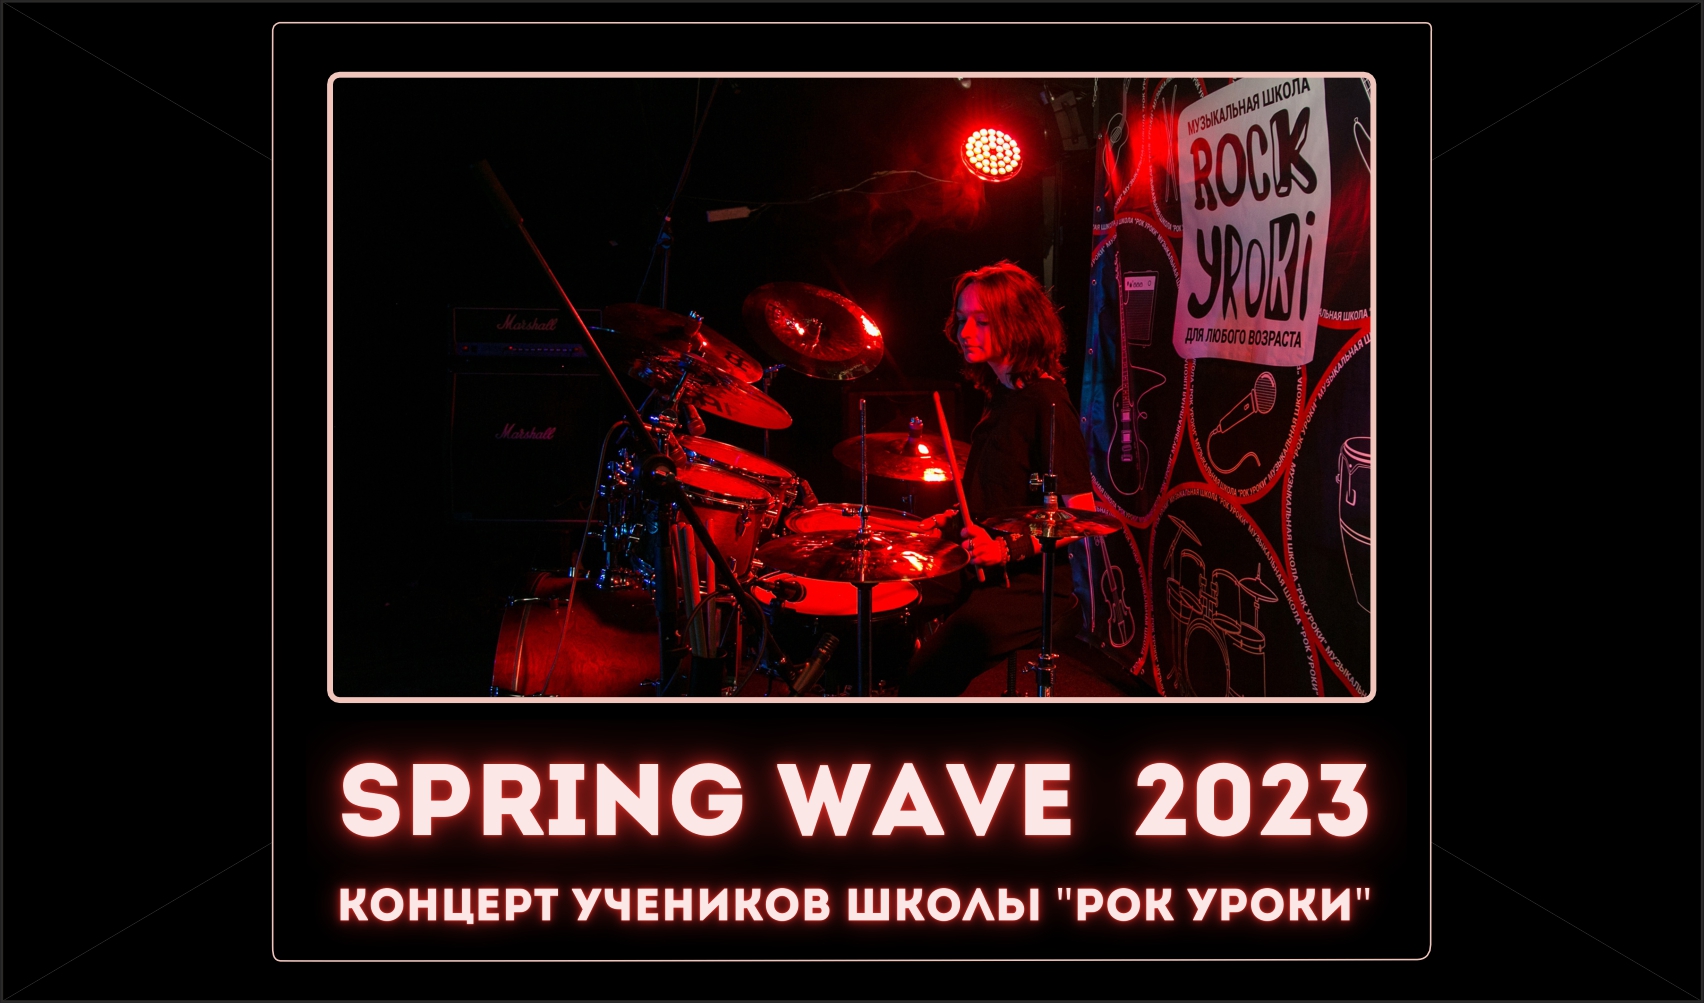 SPRING WAVE — ВЕСЕННИЙ КОНЦЕРТ УЧЕНИКОВ ШКОЛЫ 27.04.2023